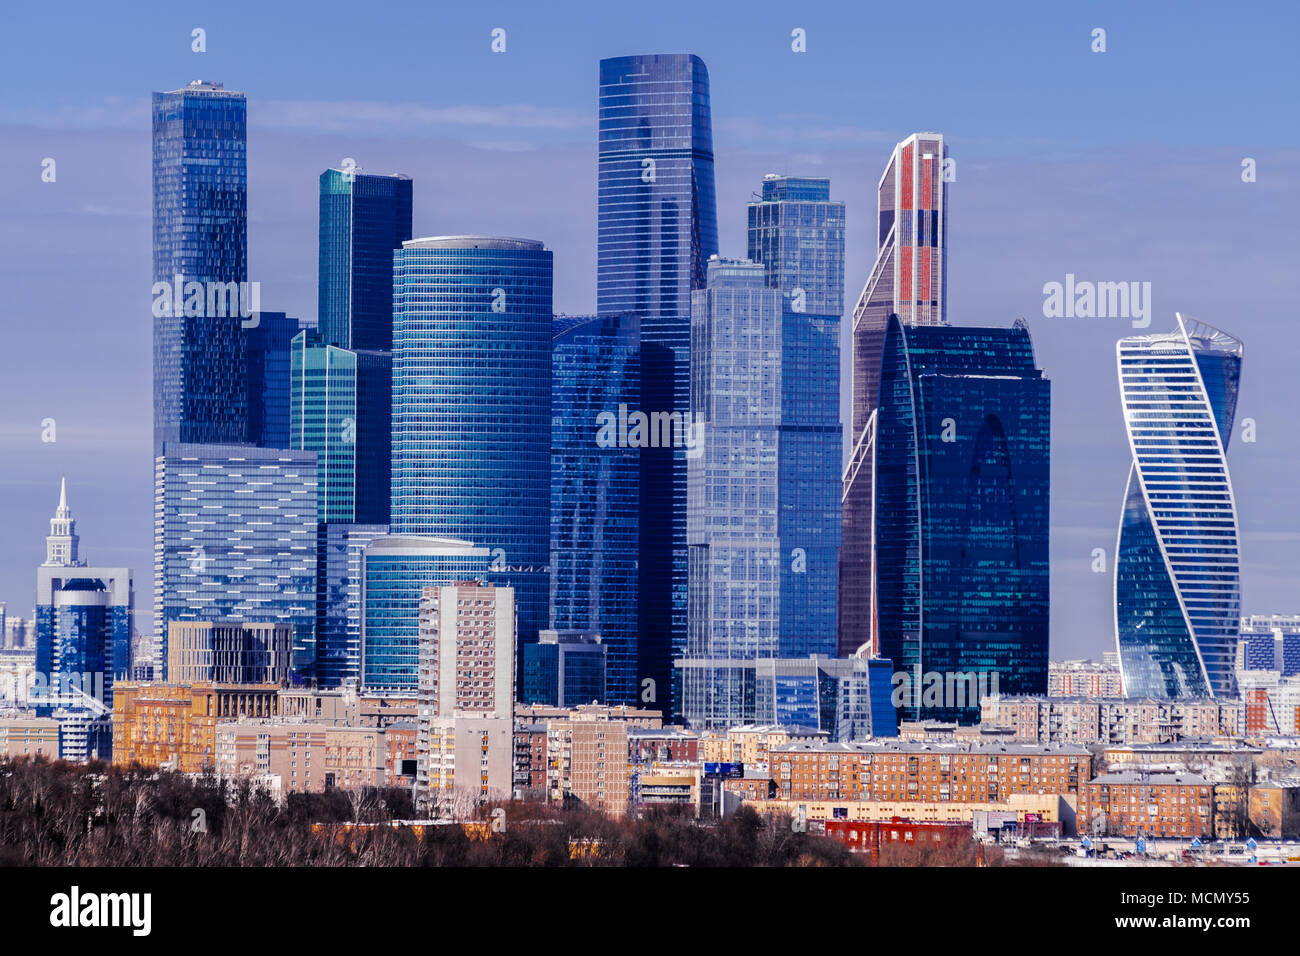 Moscow City financial skyline, Russia Stock Photo - Alamy